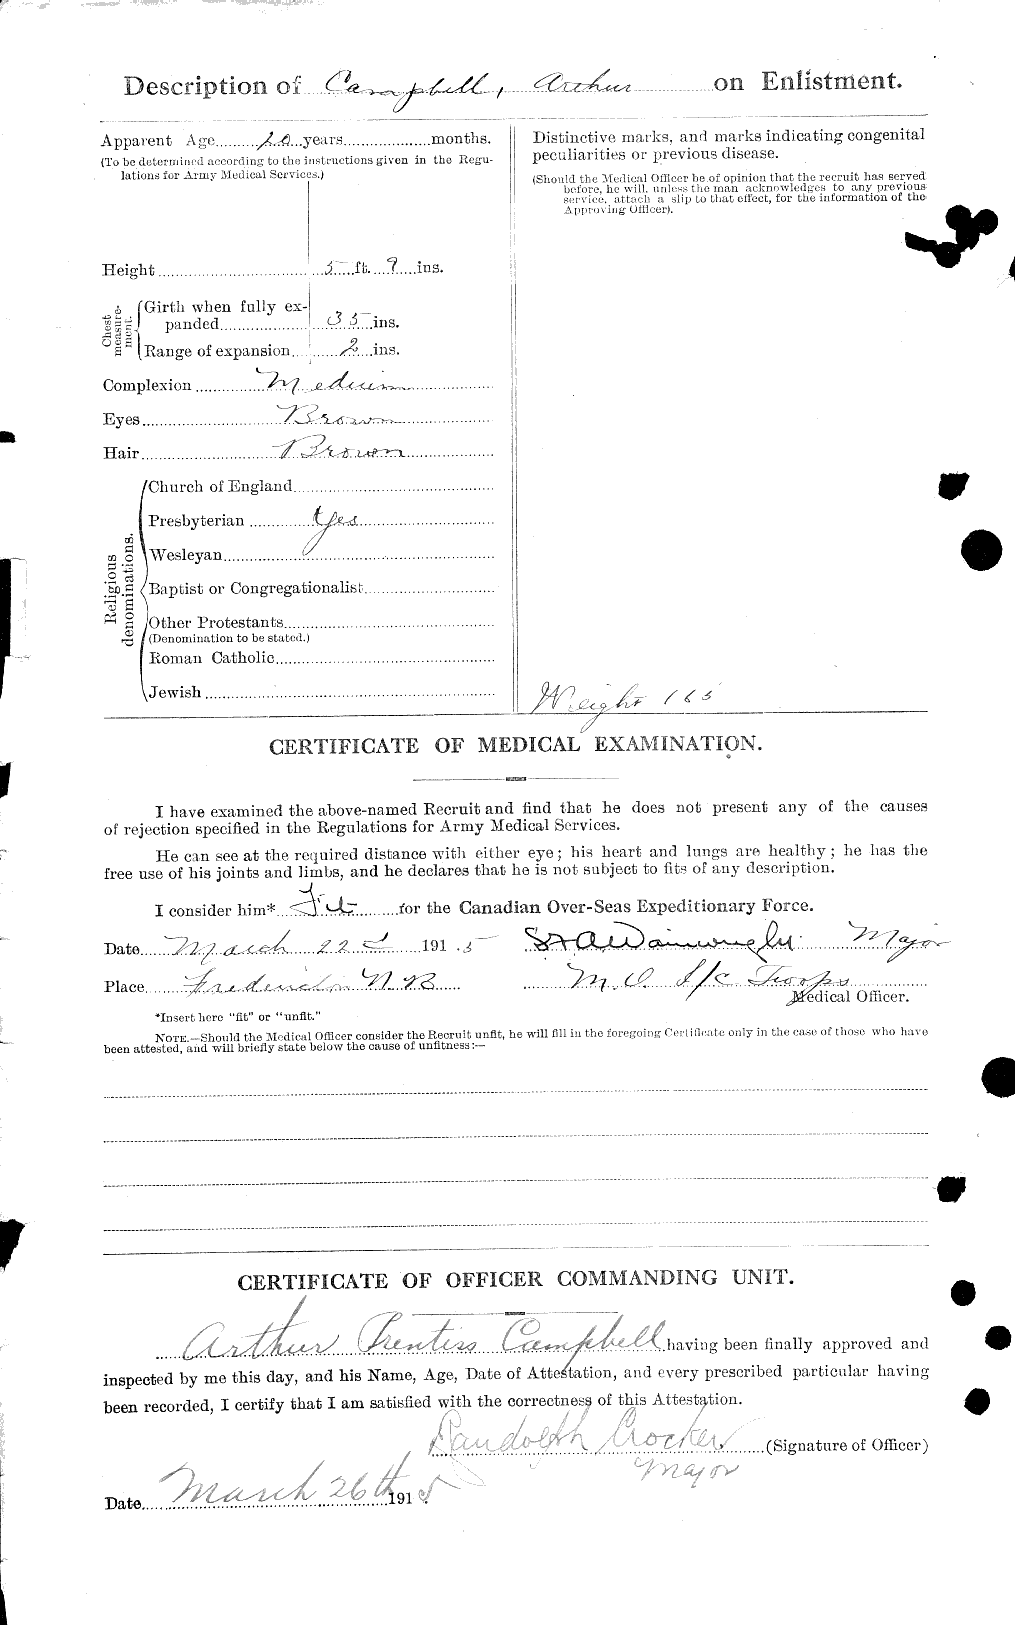 Dossiers du Personnel de la Première Guerre mondiale - CEC 003517b